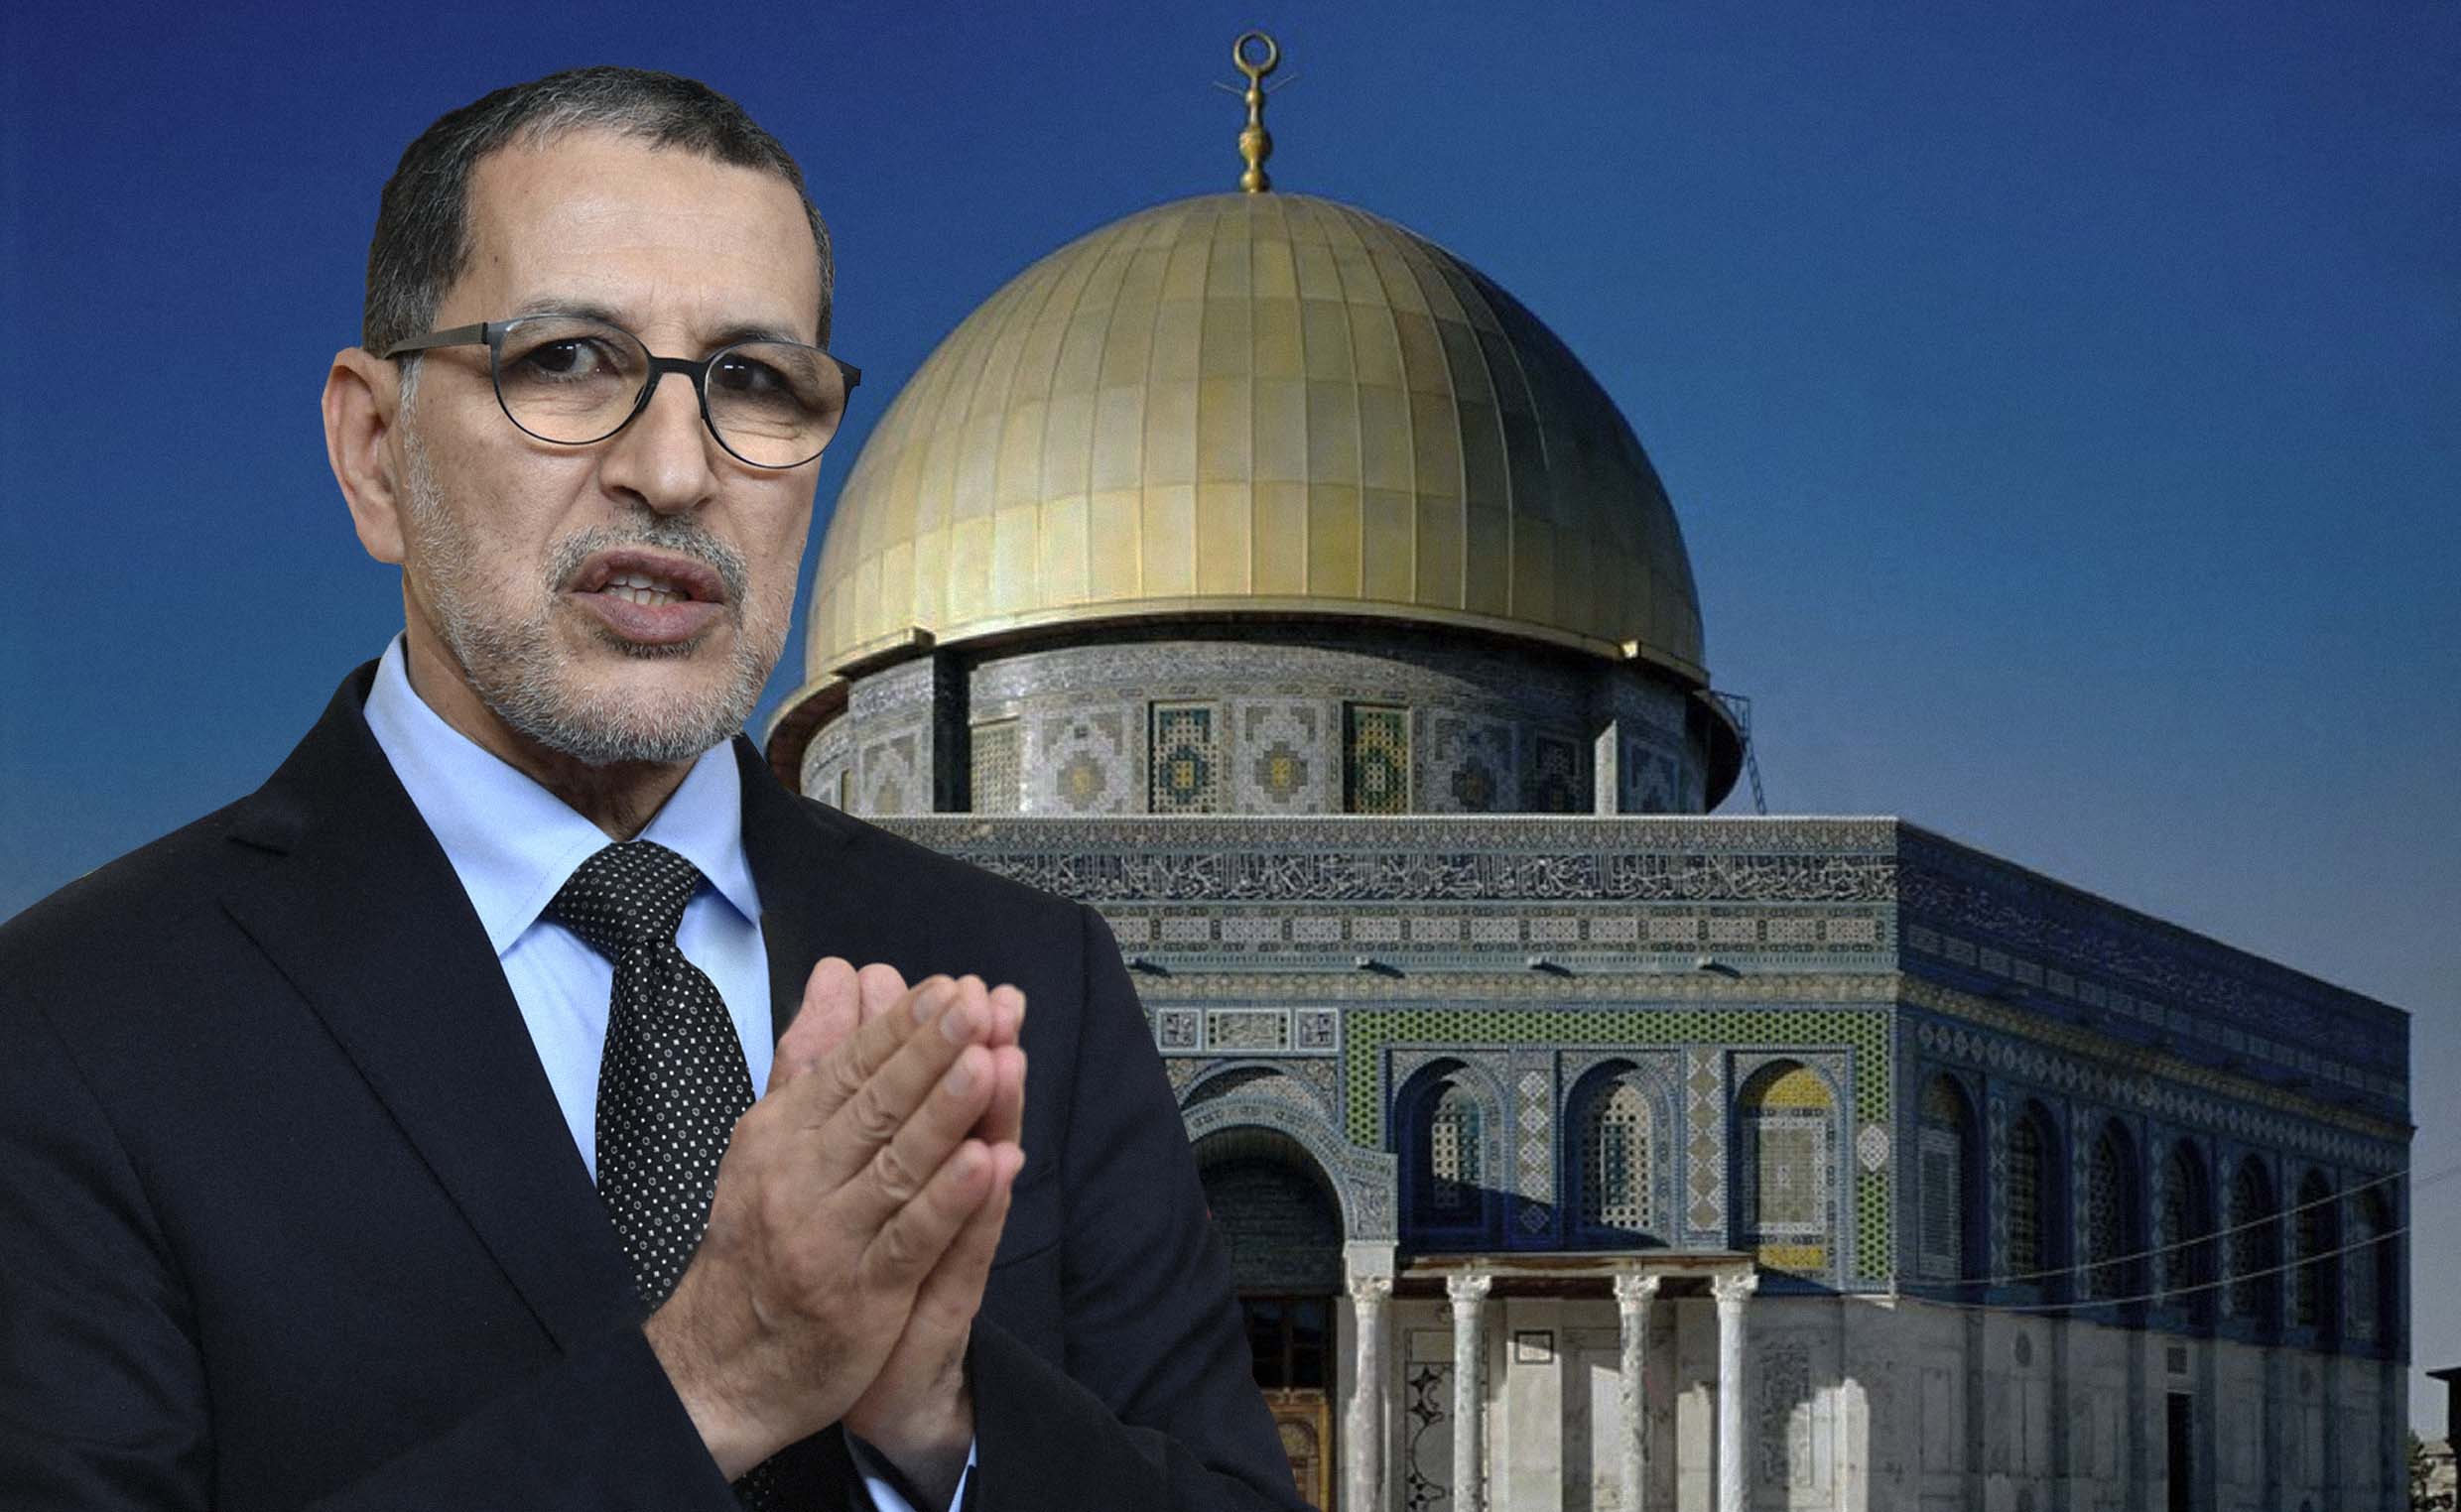 صورة رئيس الحكومة المغربي يؤكد أنه لن يرتاح حتى يصلي في الأقصى بعد استصدار تأشيرة سياحية من إسرائيل